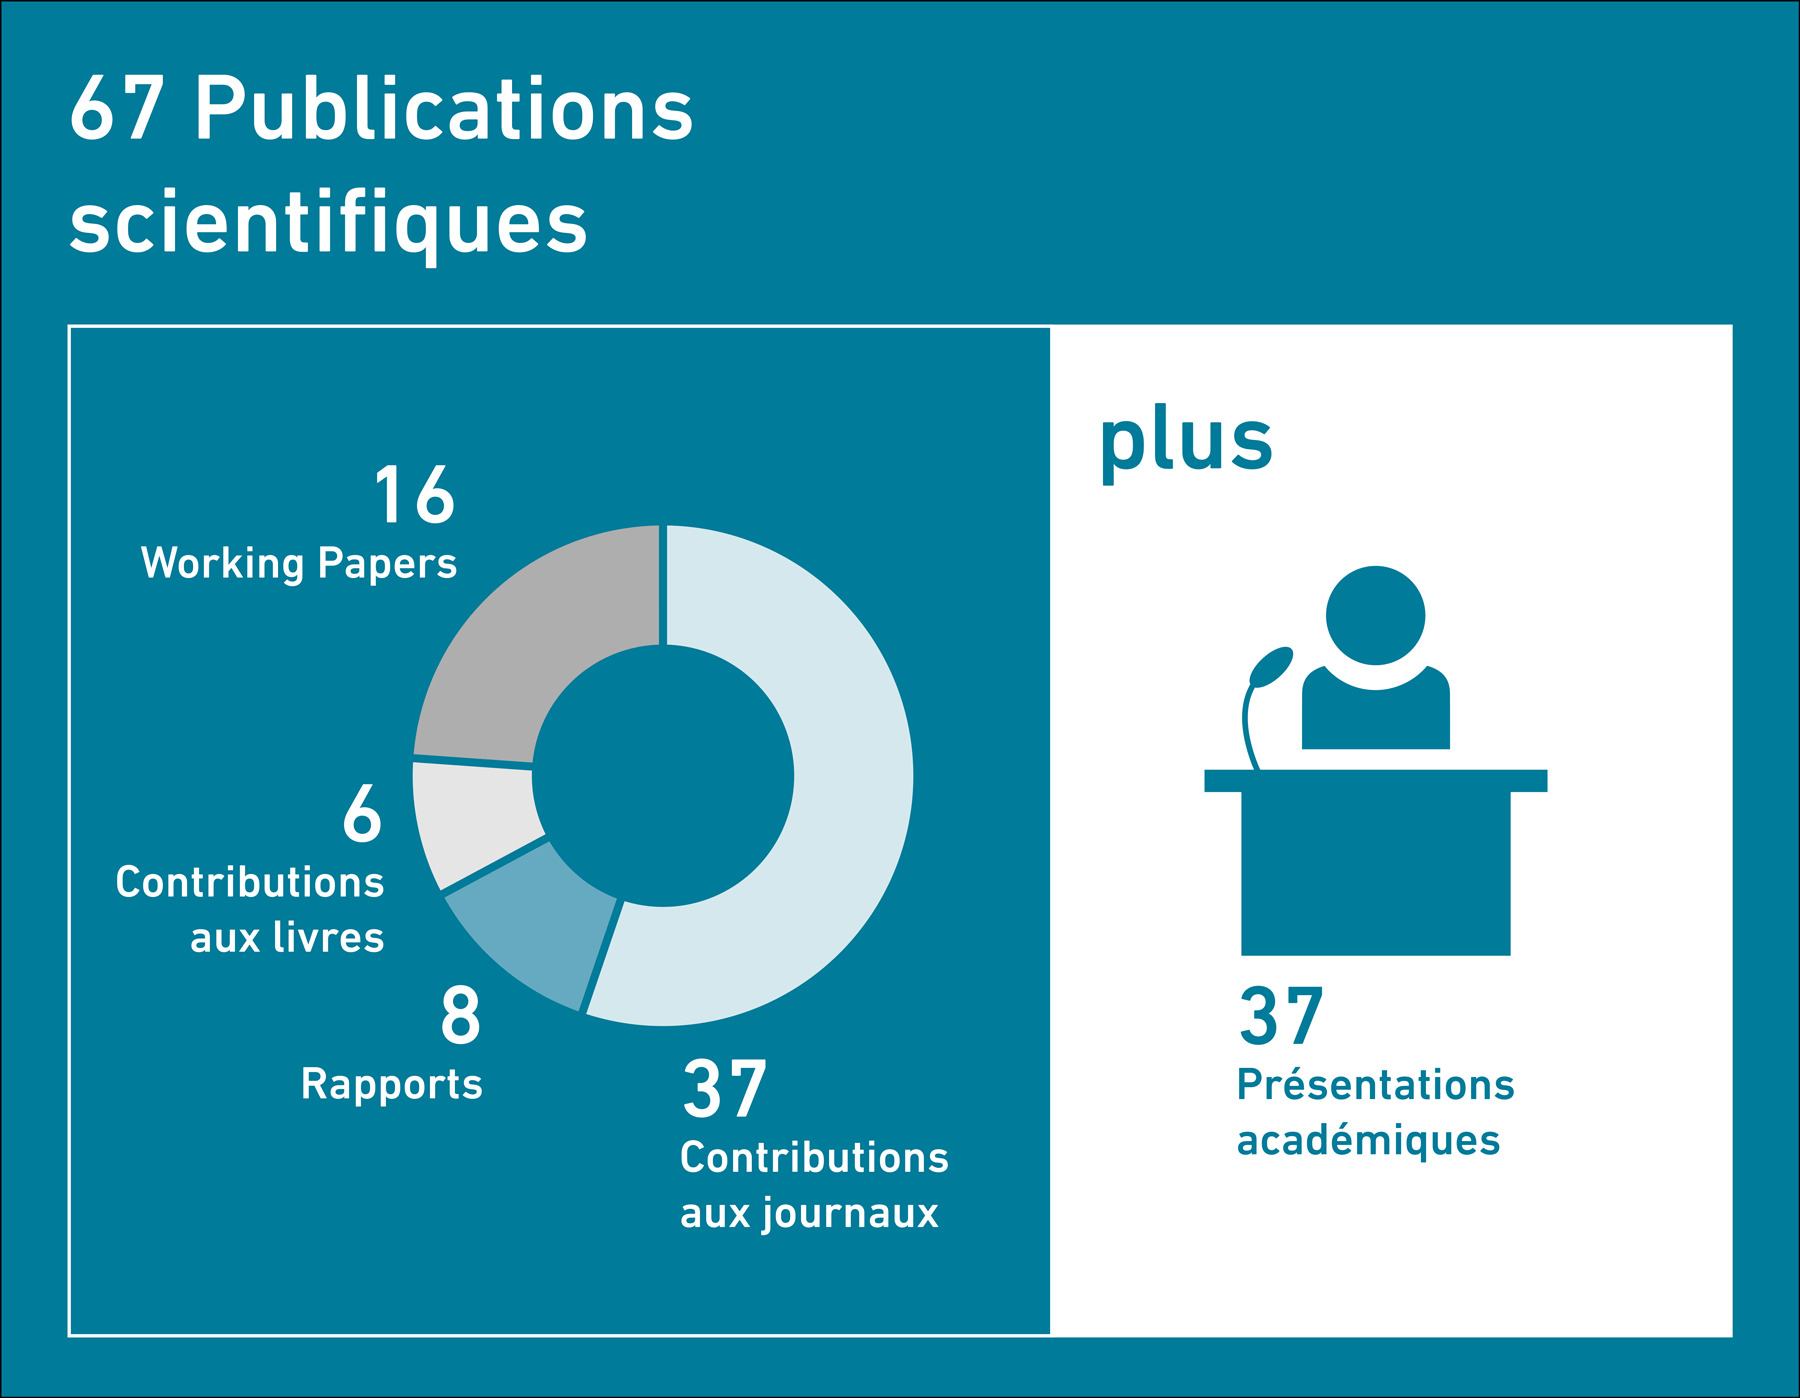 Enlarged view: 67 Publications scientifiques